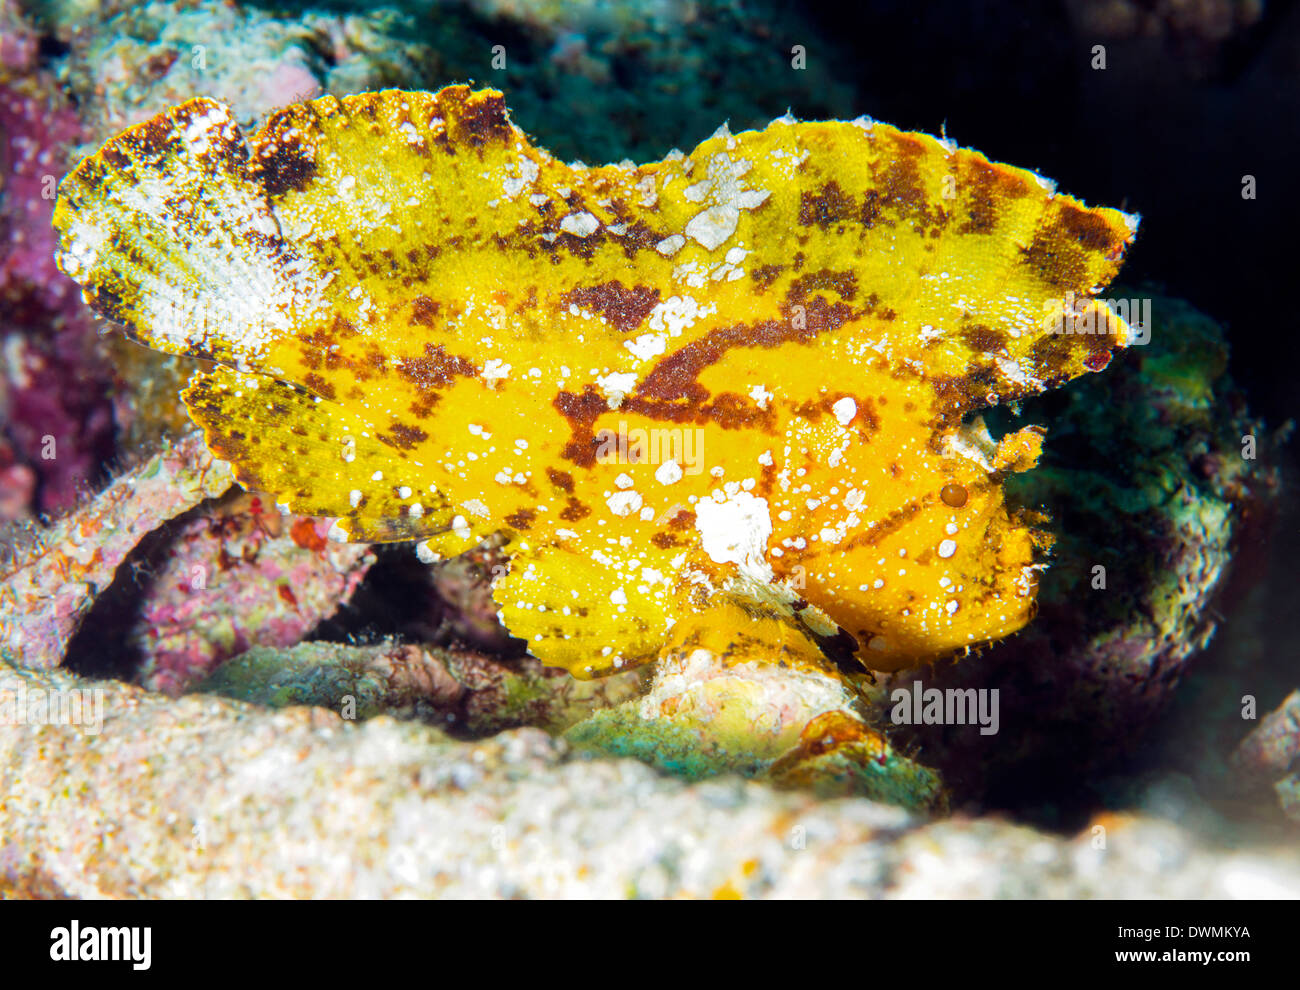 Fisch (Taenianotus Triacanthus), Blatt ein Hinterhalt Raubtier gefunden Amonst Korallen, Celebes-See, Sabah, Malaysia, Südostasien, Asien Stockfoto